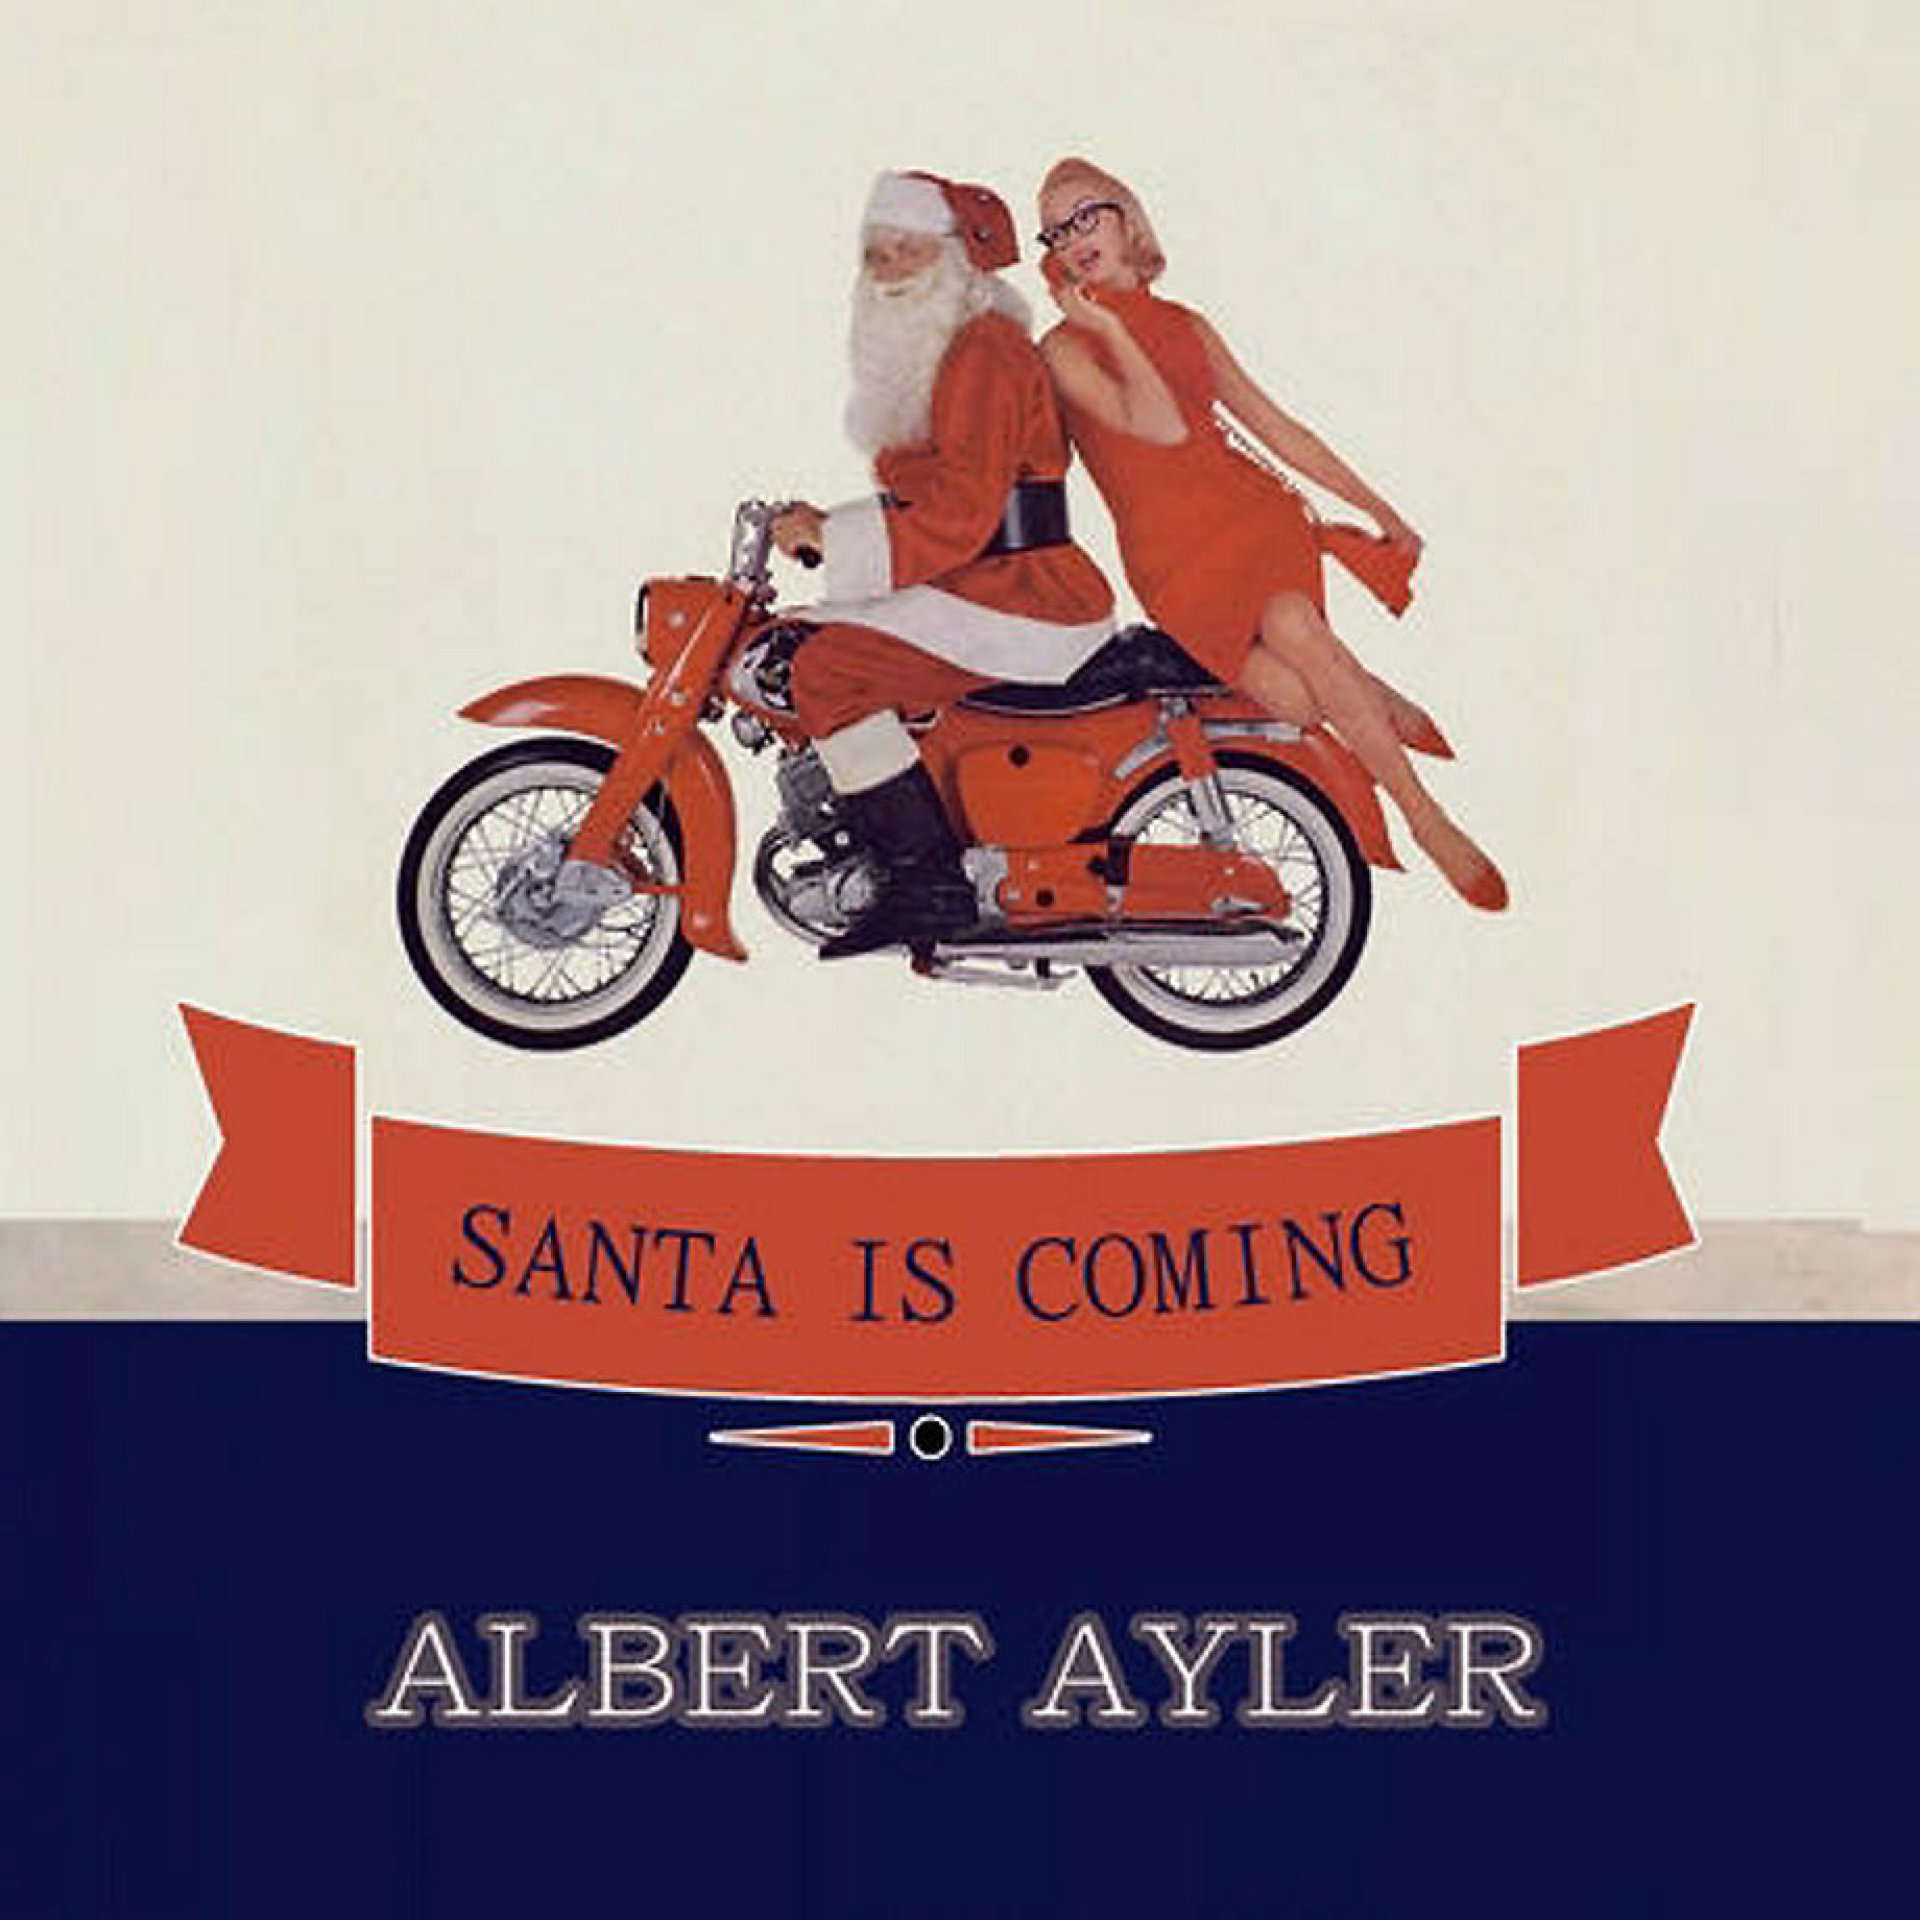 Det digitale coveret til julealbumet til Albert Ayler er hentet fra en gammel motorsykkelreklame.